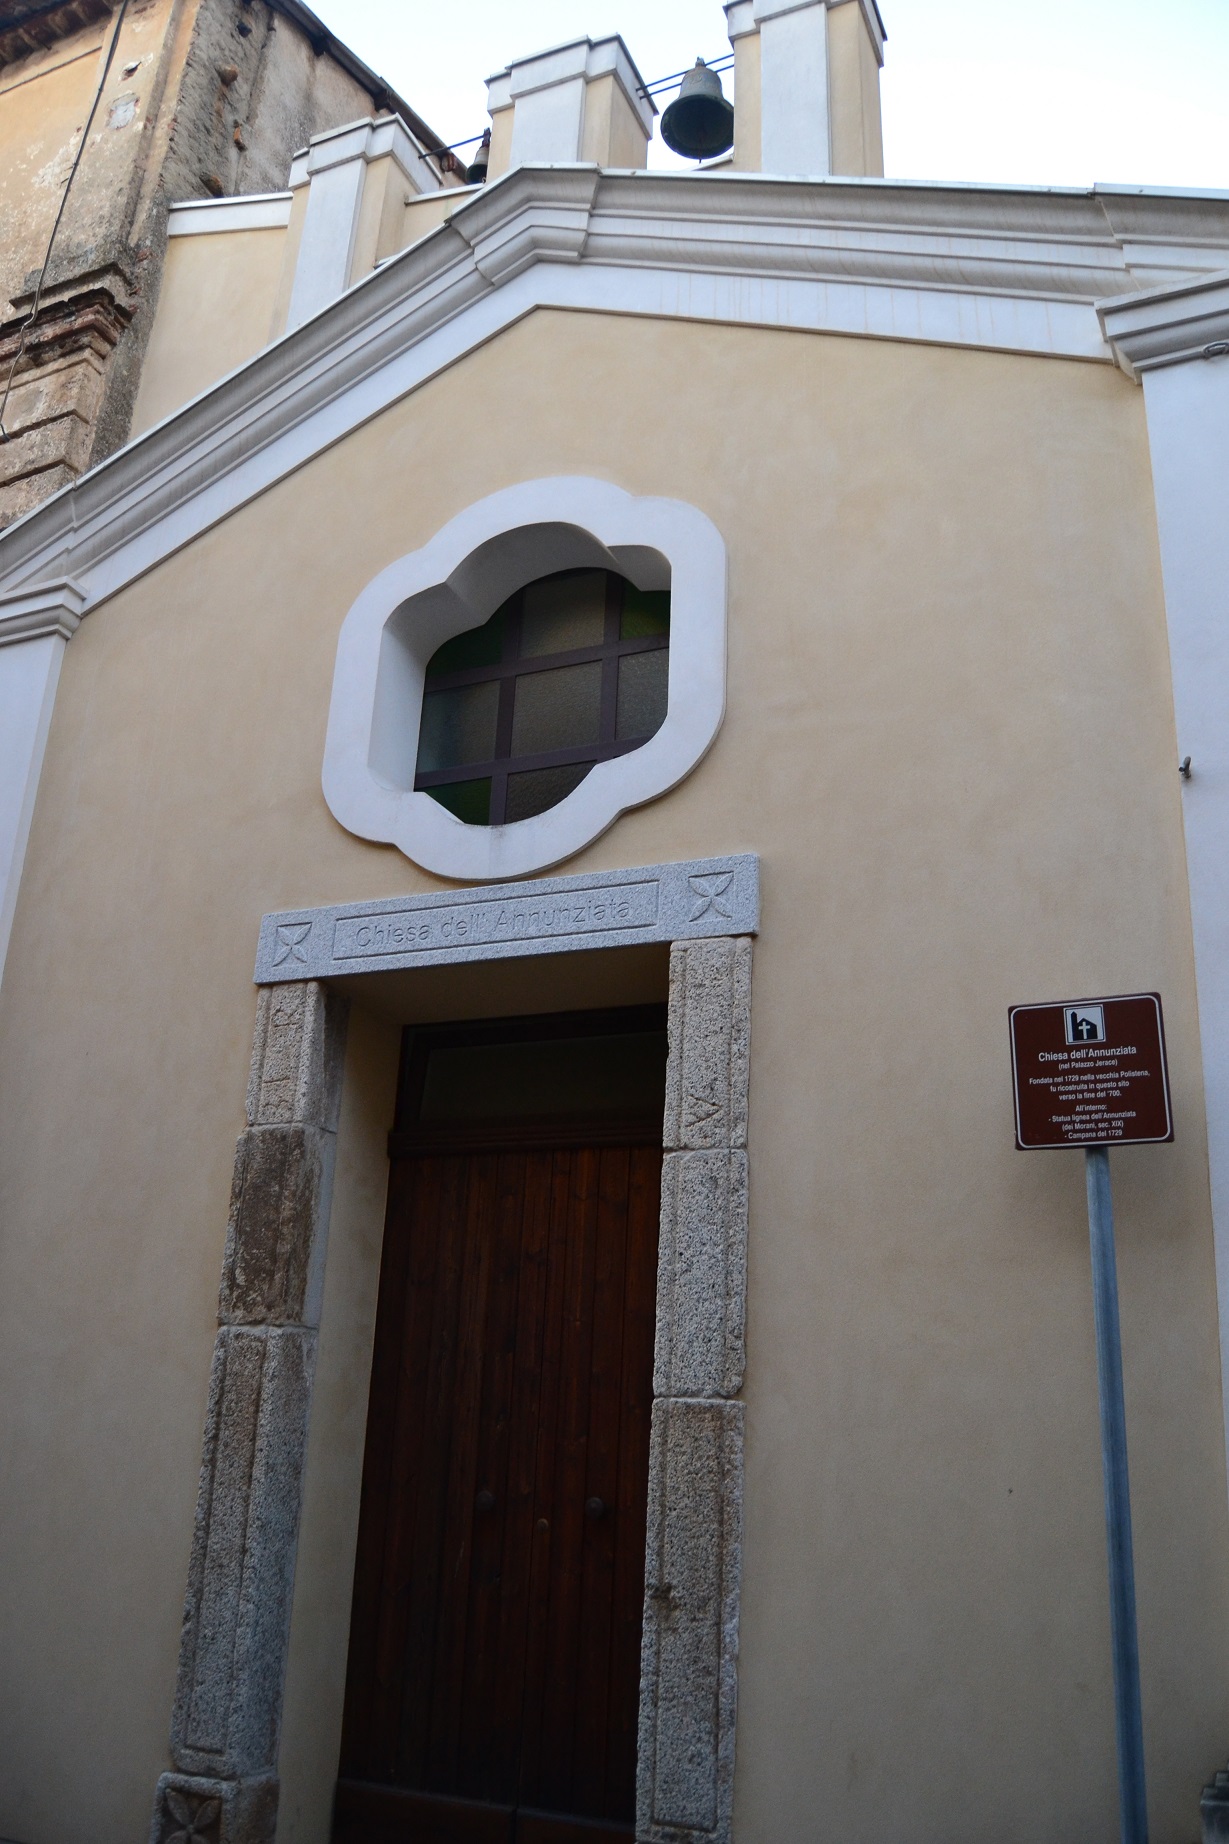 Chiesa Santissima Annunziata (chiesa, privata) - Polistena (RC)  (XVIII; XVIII; XVIII)